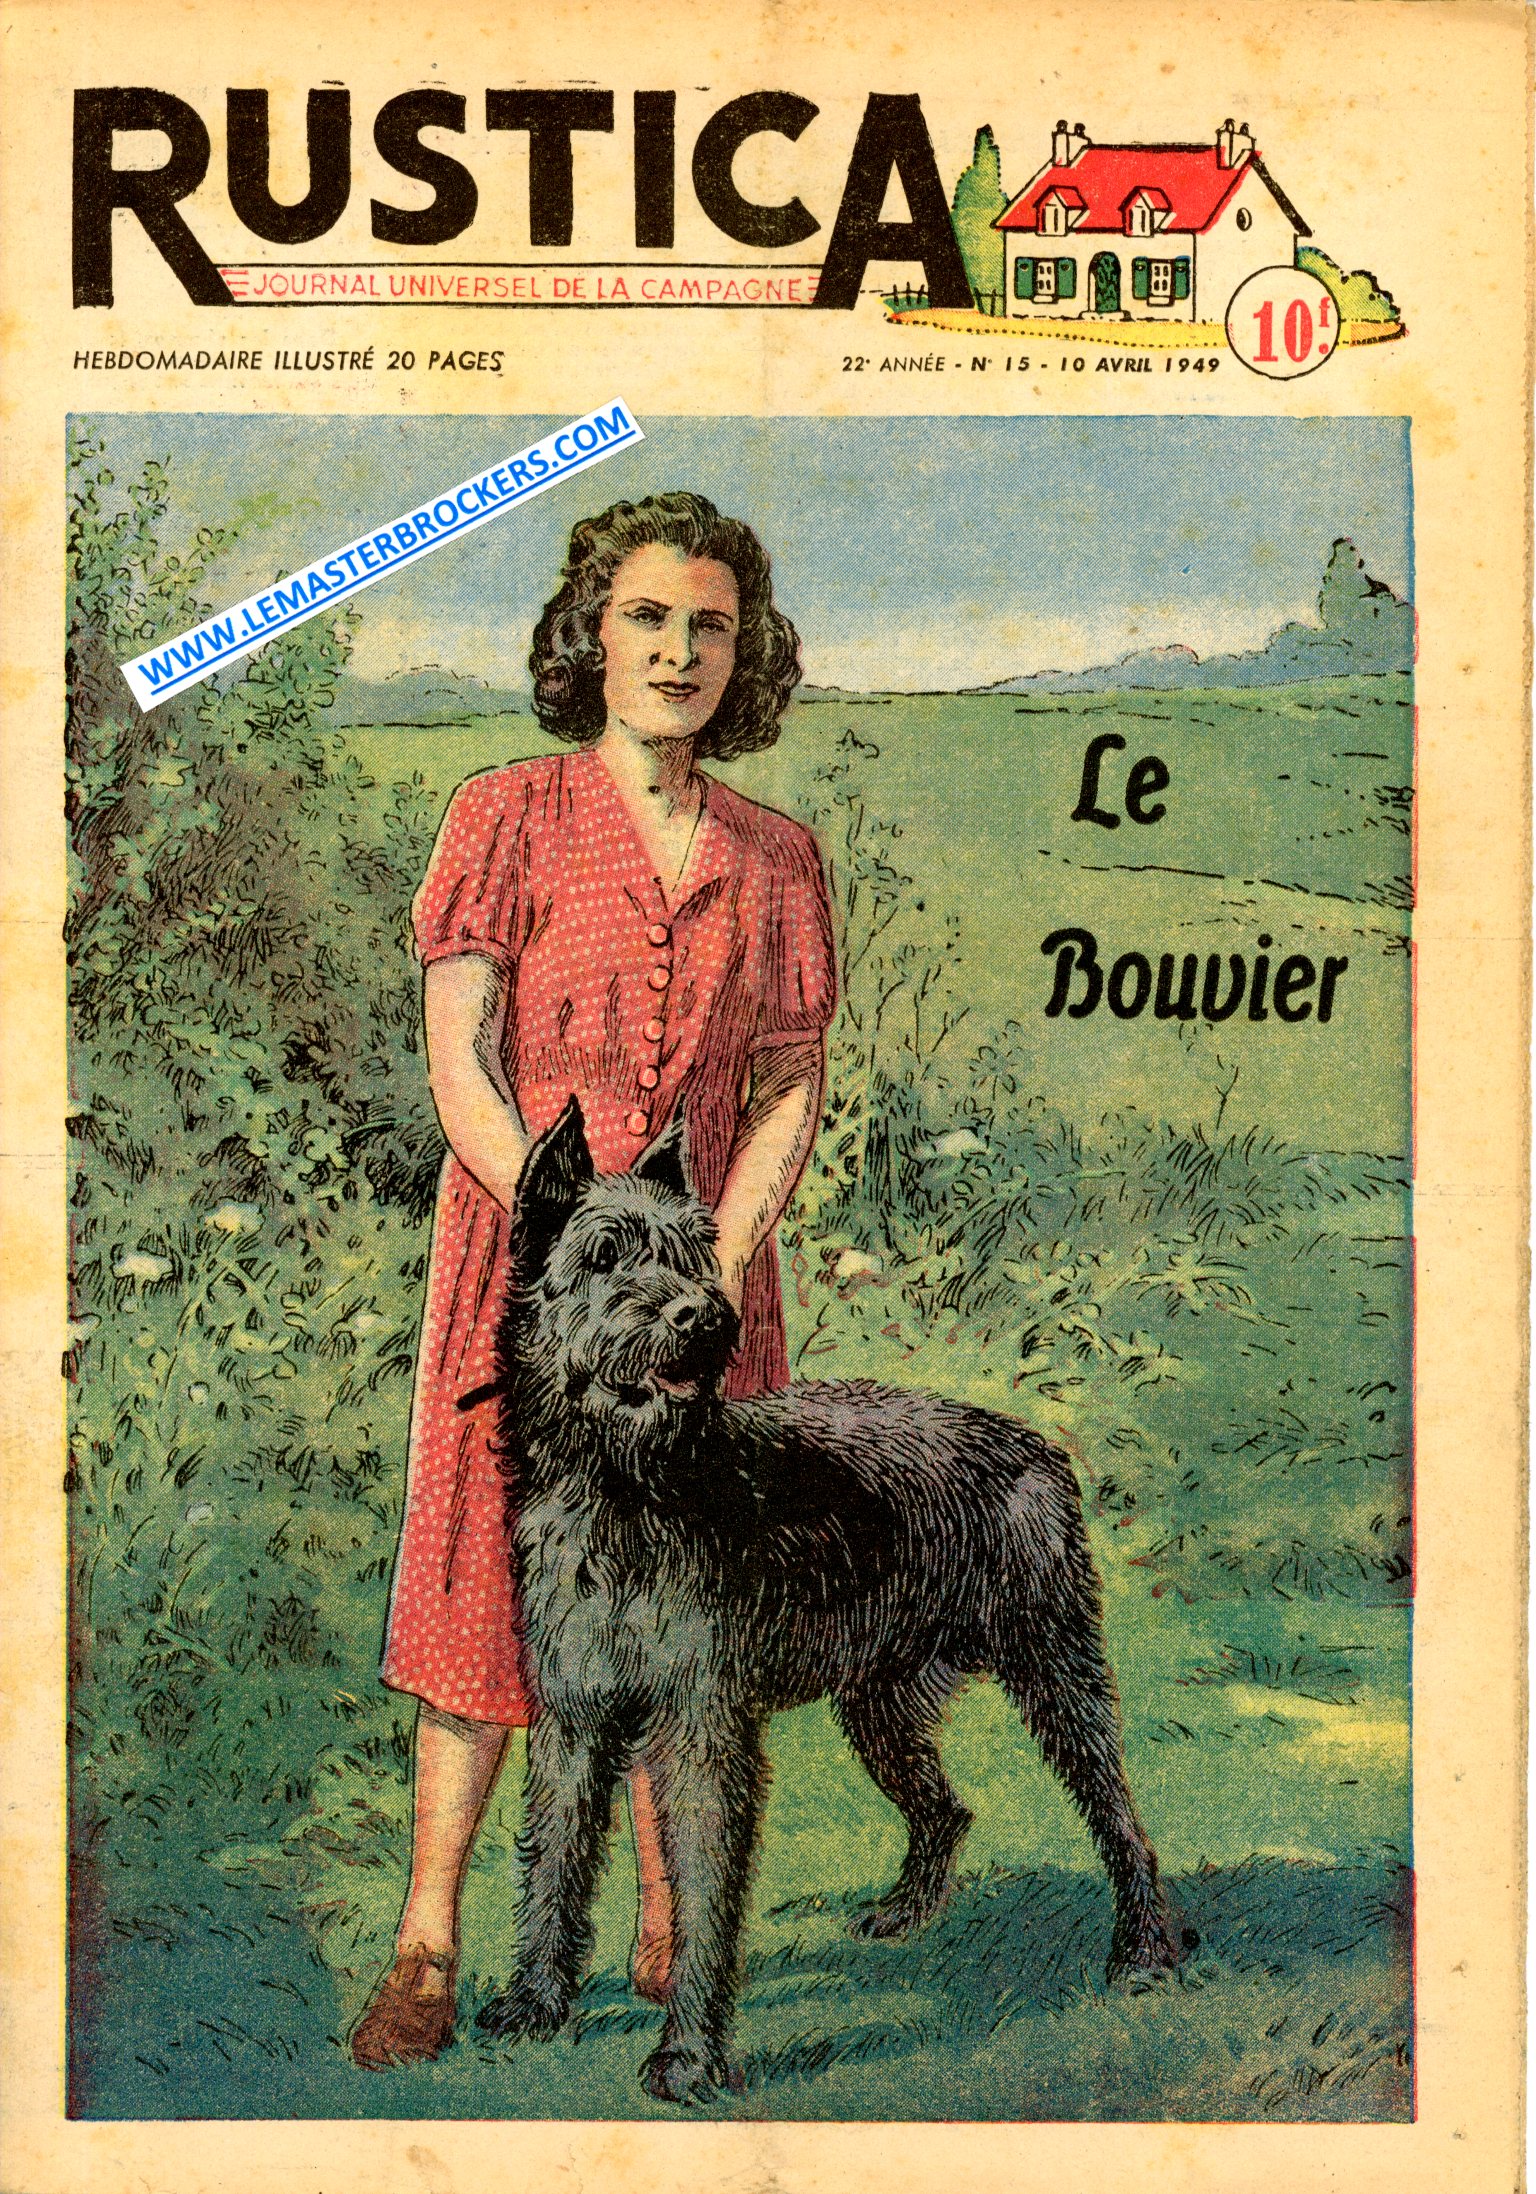 VIEUX JOURNAL RUSTICA 15 DE 1949 - LE BOUVIER - GERANIUM A GRANDES FLEURS - POULE MENEUSE - CULTURE DU MAÏS